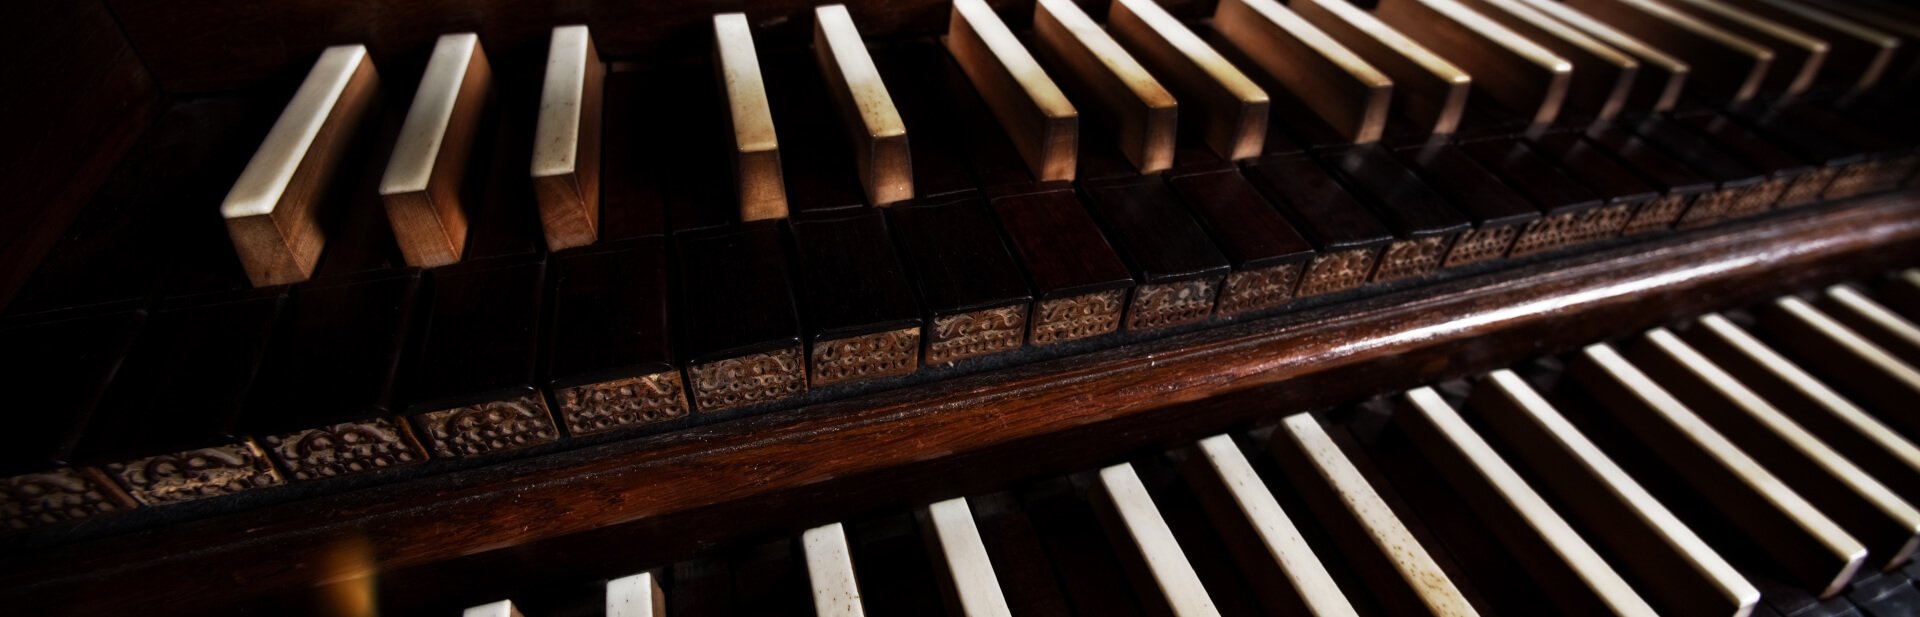 Orgeltastatur